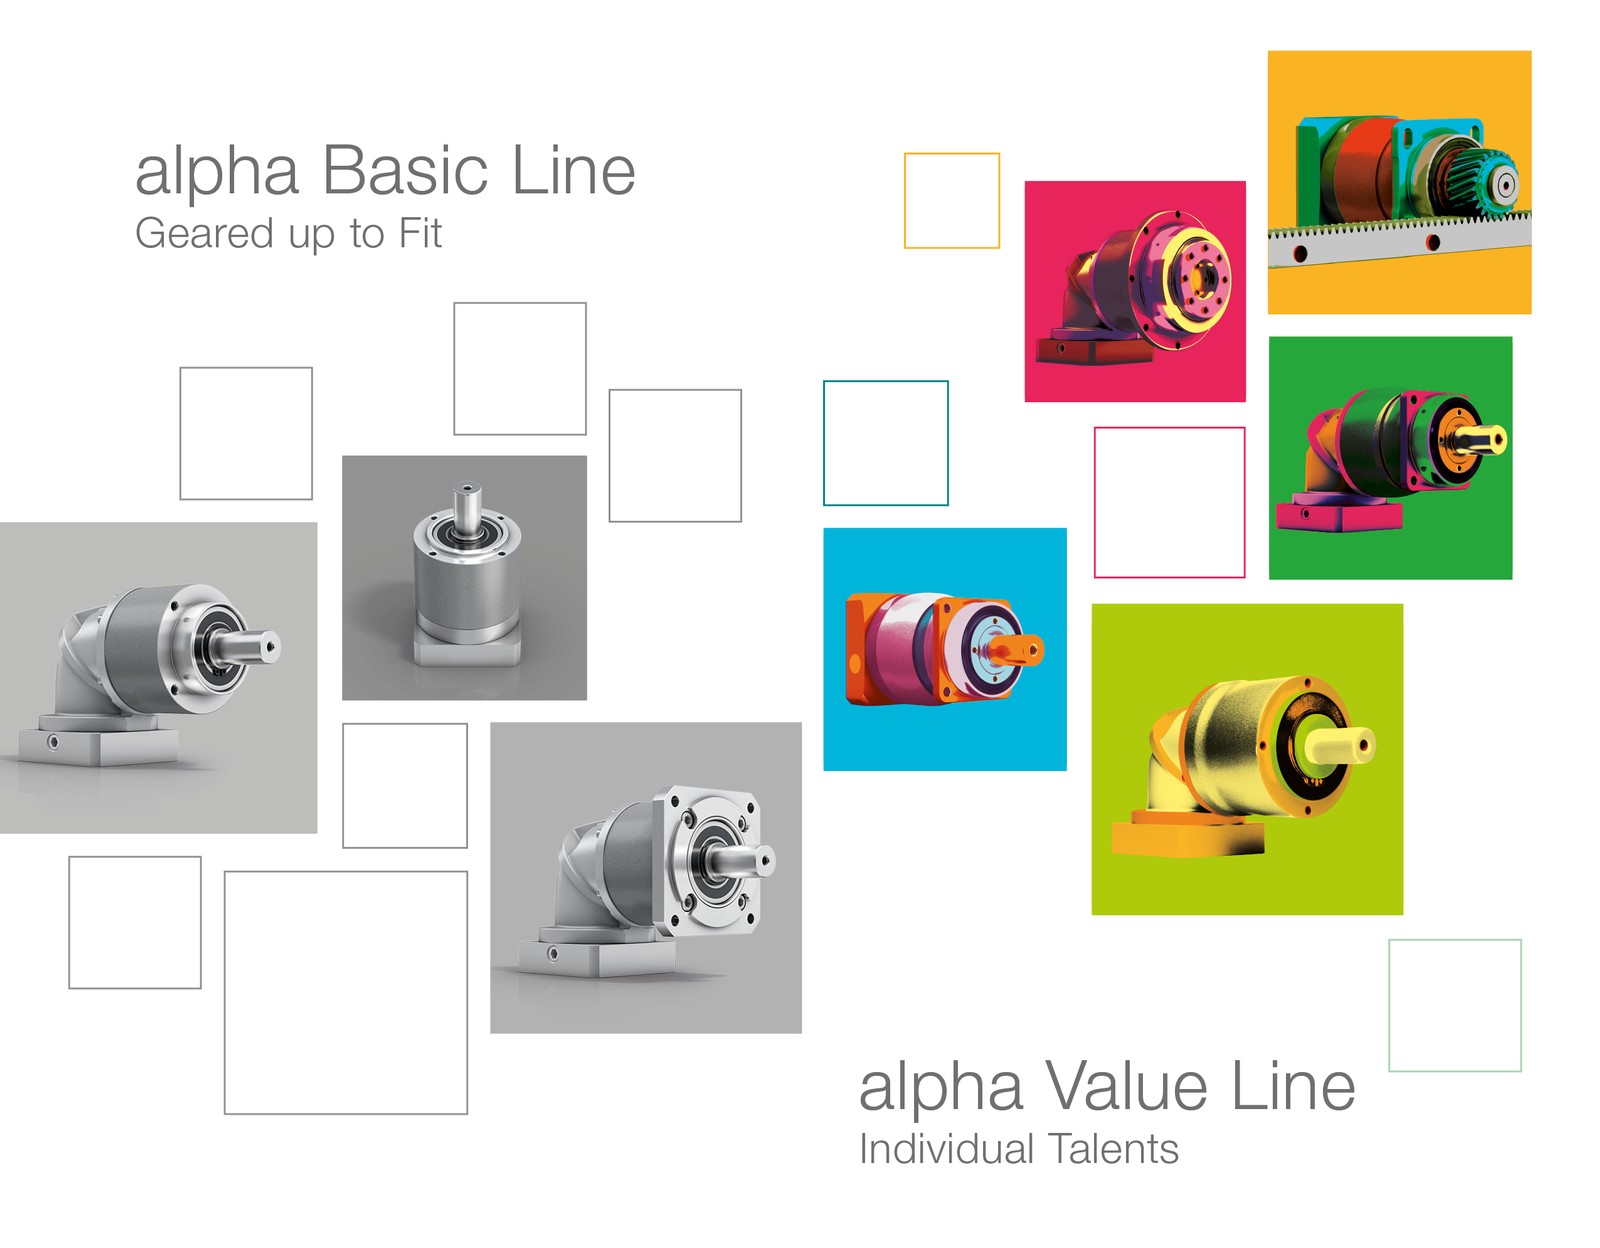 Mit der neuen CP-Baureihe der Alpha Basic Line sowie den bauraumoptimierten Winkelstufen – nun auch für die NP-Baureihen der Alpha Value Line – komplettiert Wittenstein Alpha  das Leistungsportfolio.